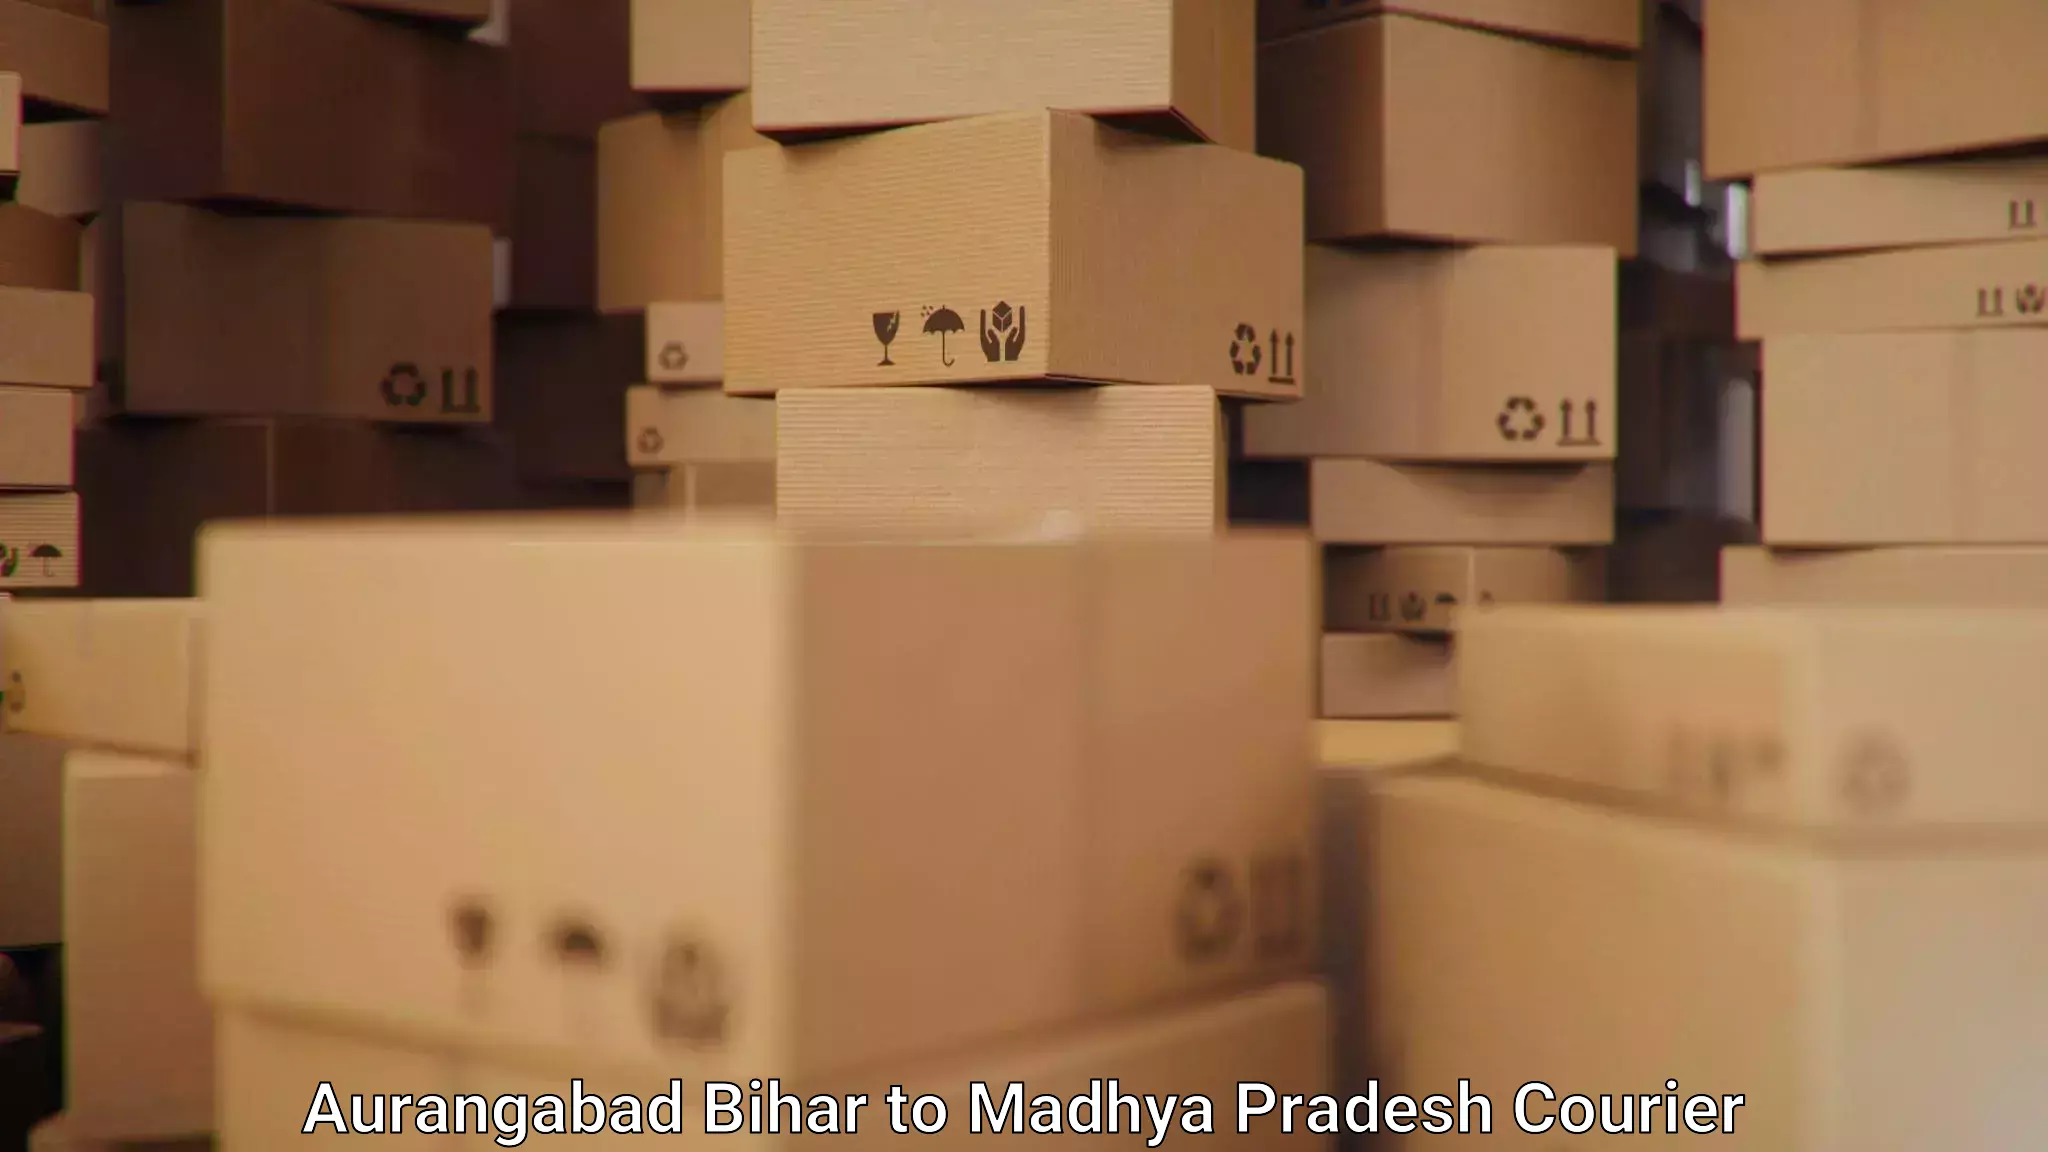 Doorstep delivery service Aurangabad Bihar to Indore